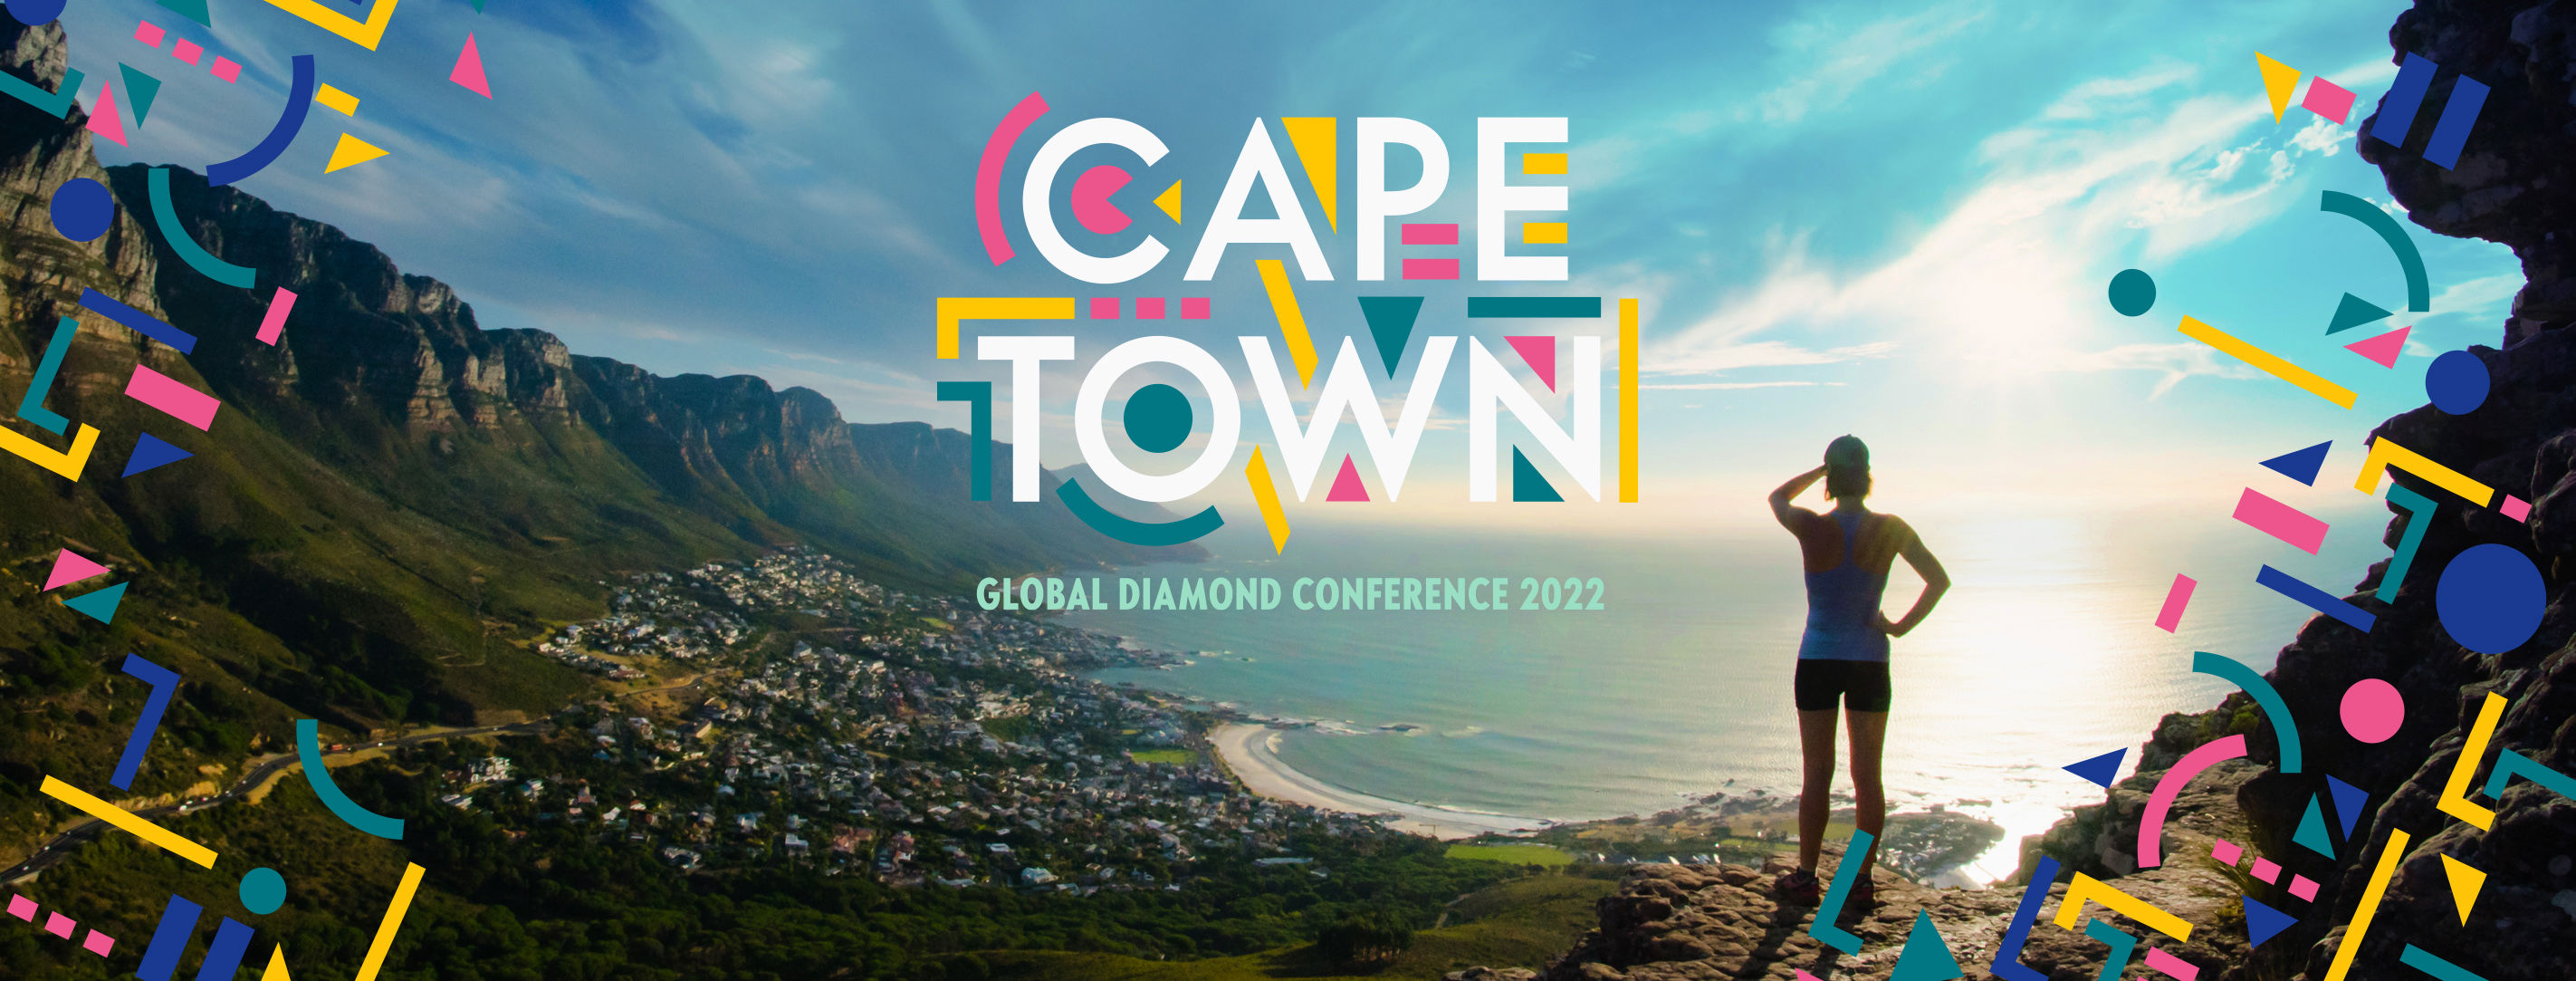 Kaapstad global diamond conference Oriflame